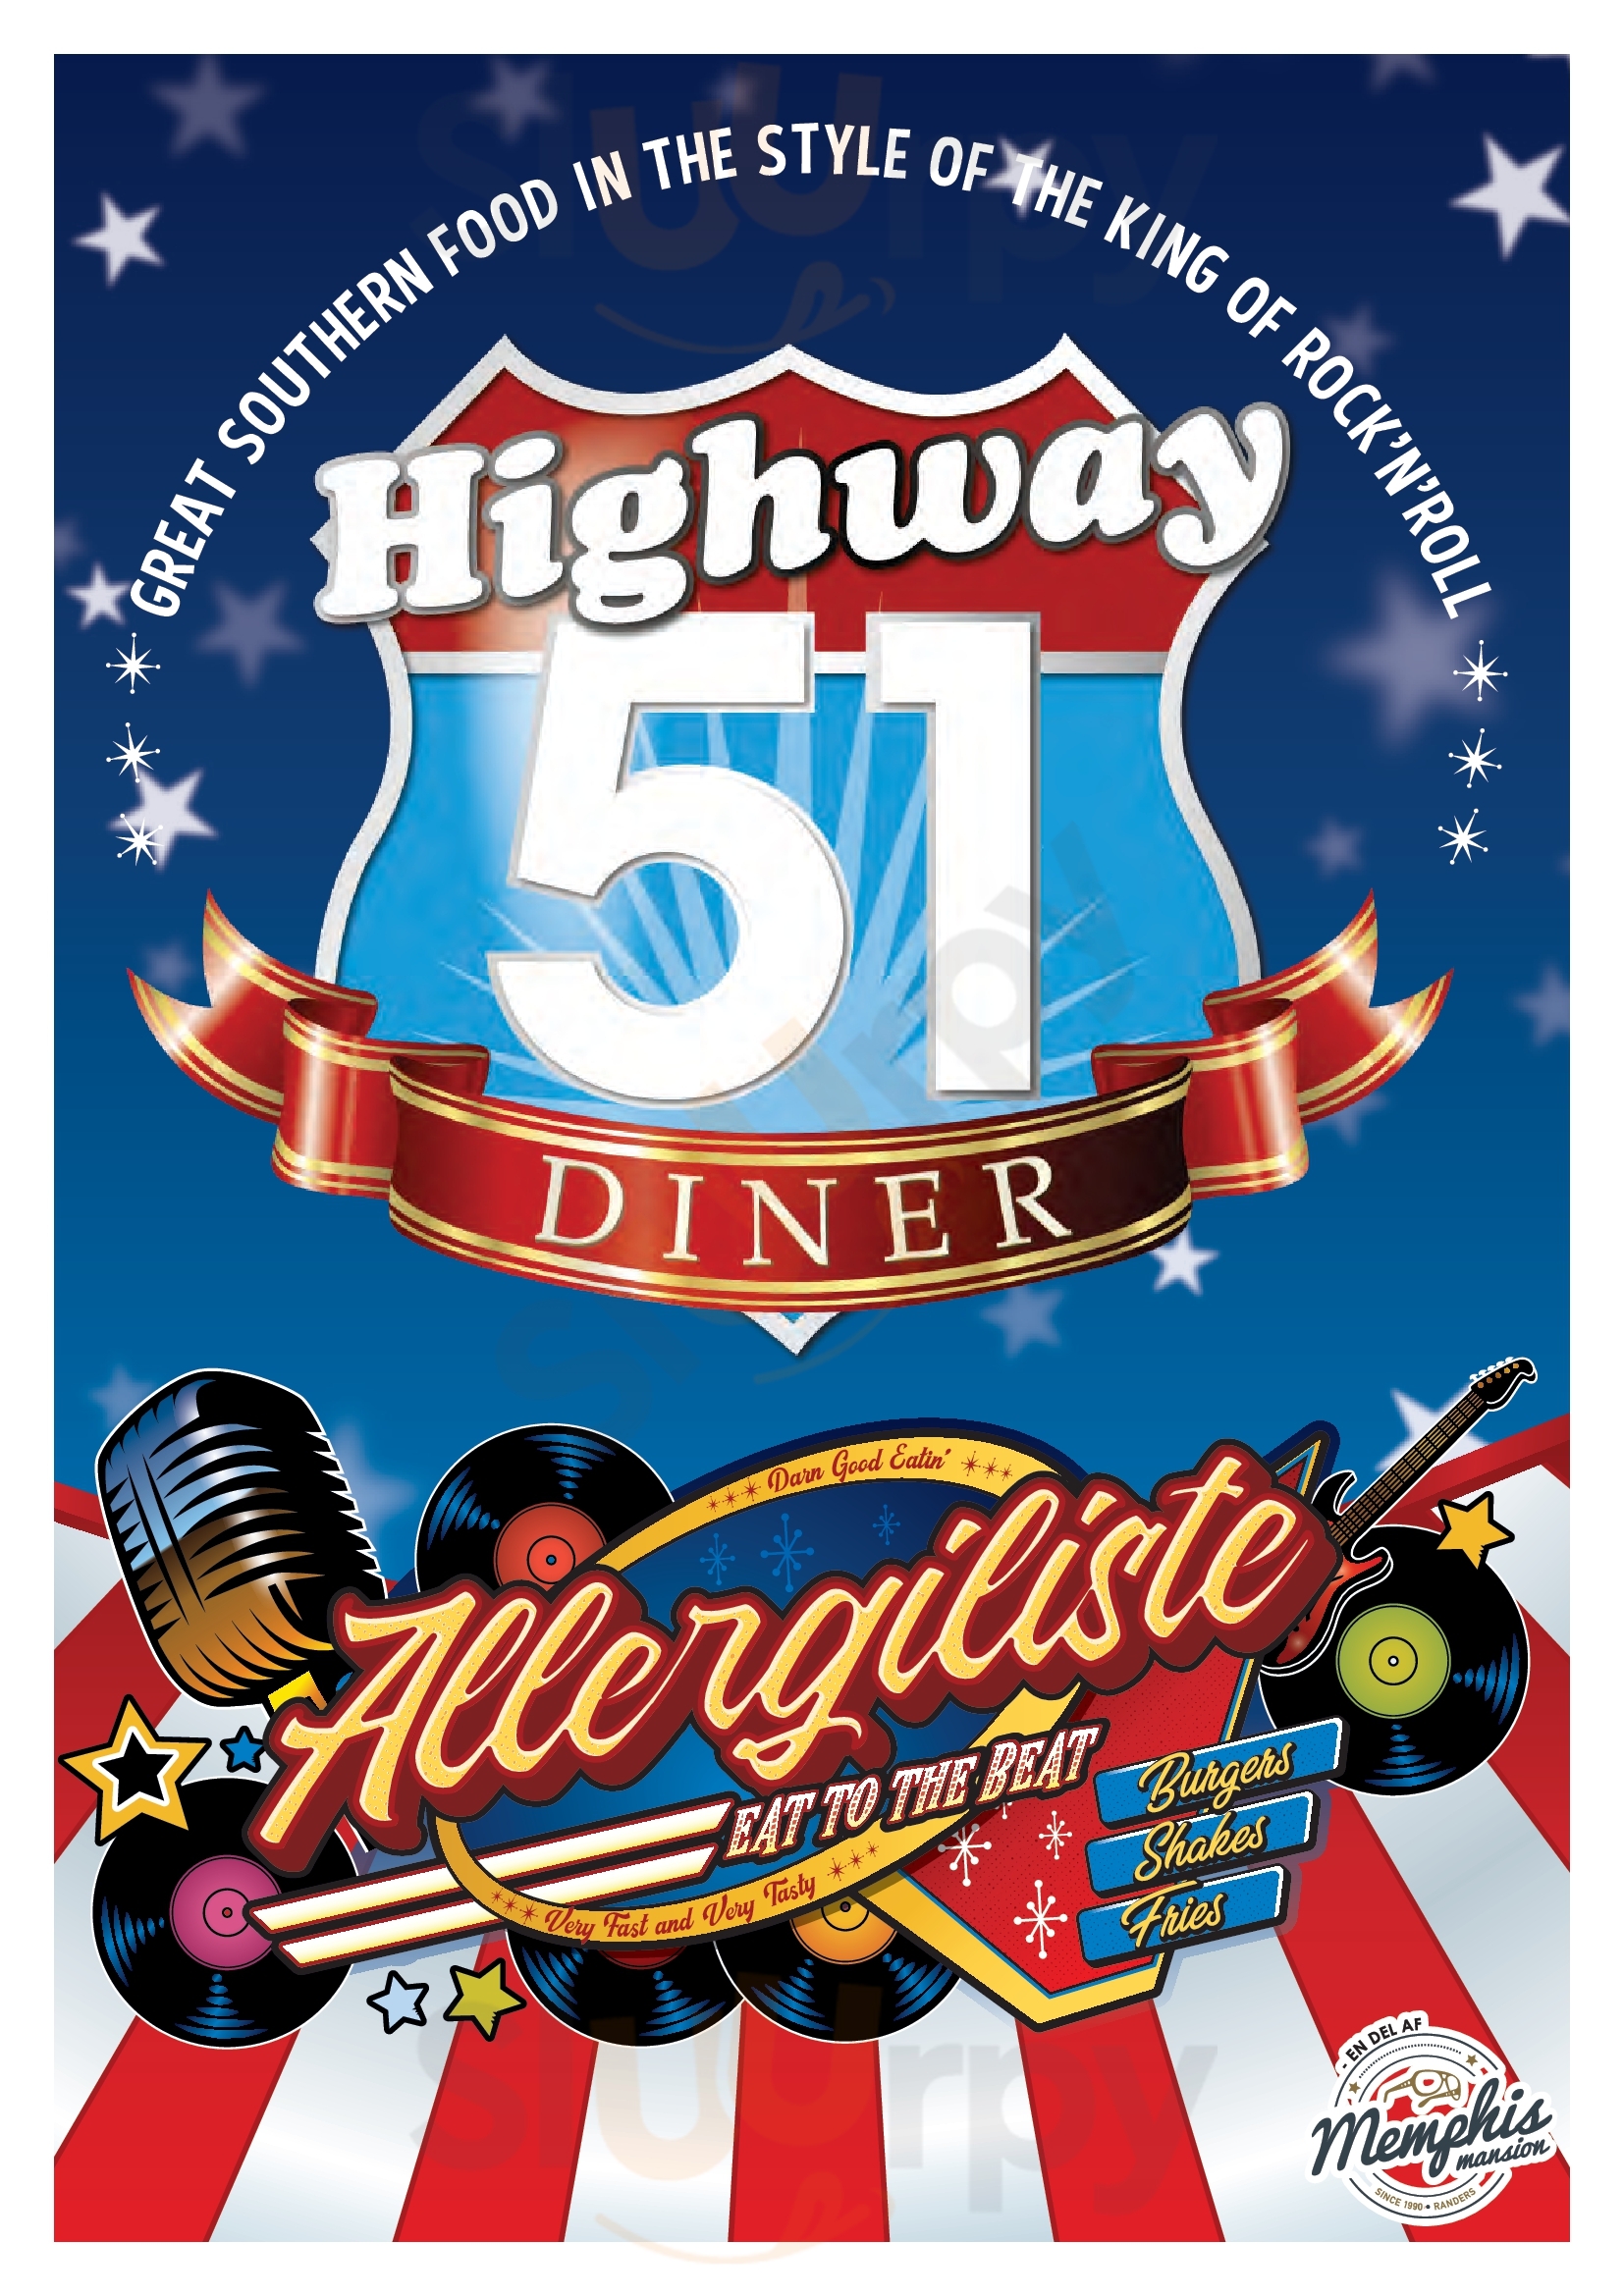 Highway 51 Diner Randers Menu - 1